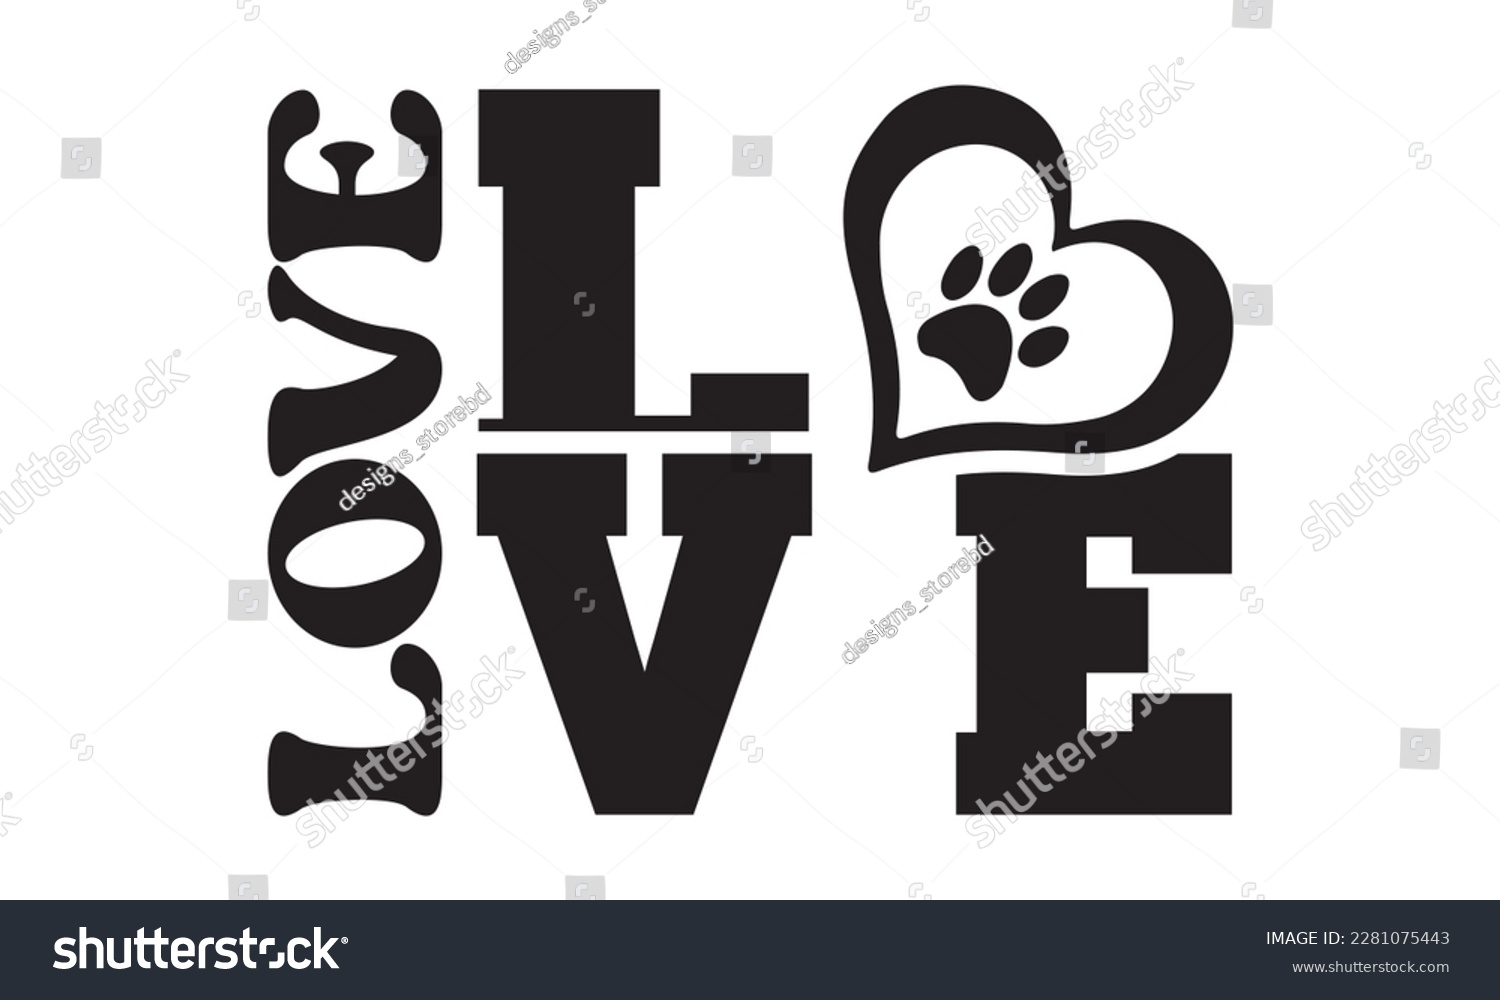 SVG of love svg ,dog SVG Bundle, dog SVG design bundle and  t-shirt design, Funny Dog Quotes SVG Designs and cut files, fur mom, animal design, animal lover svg